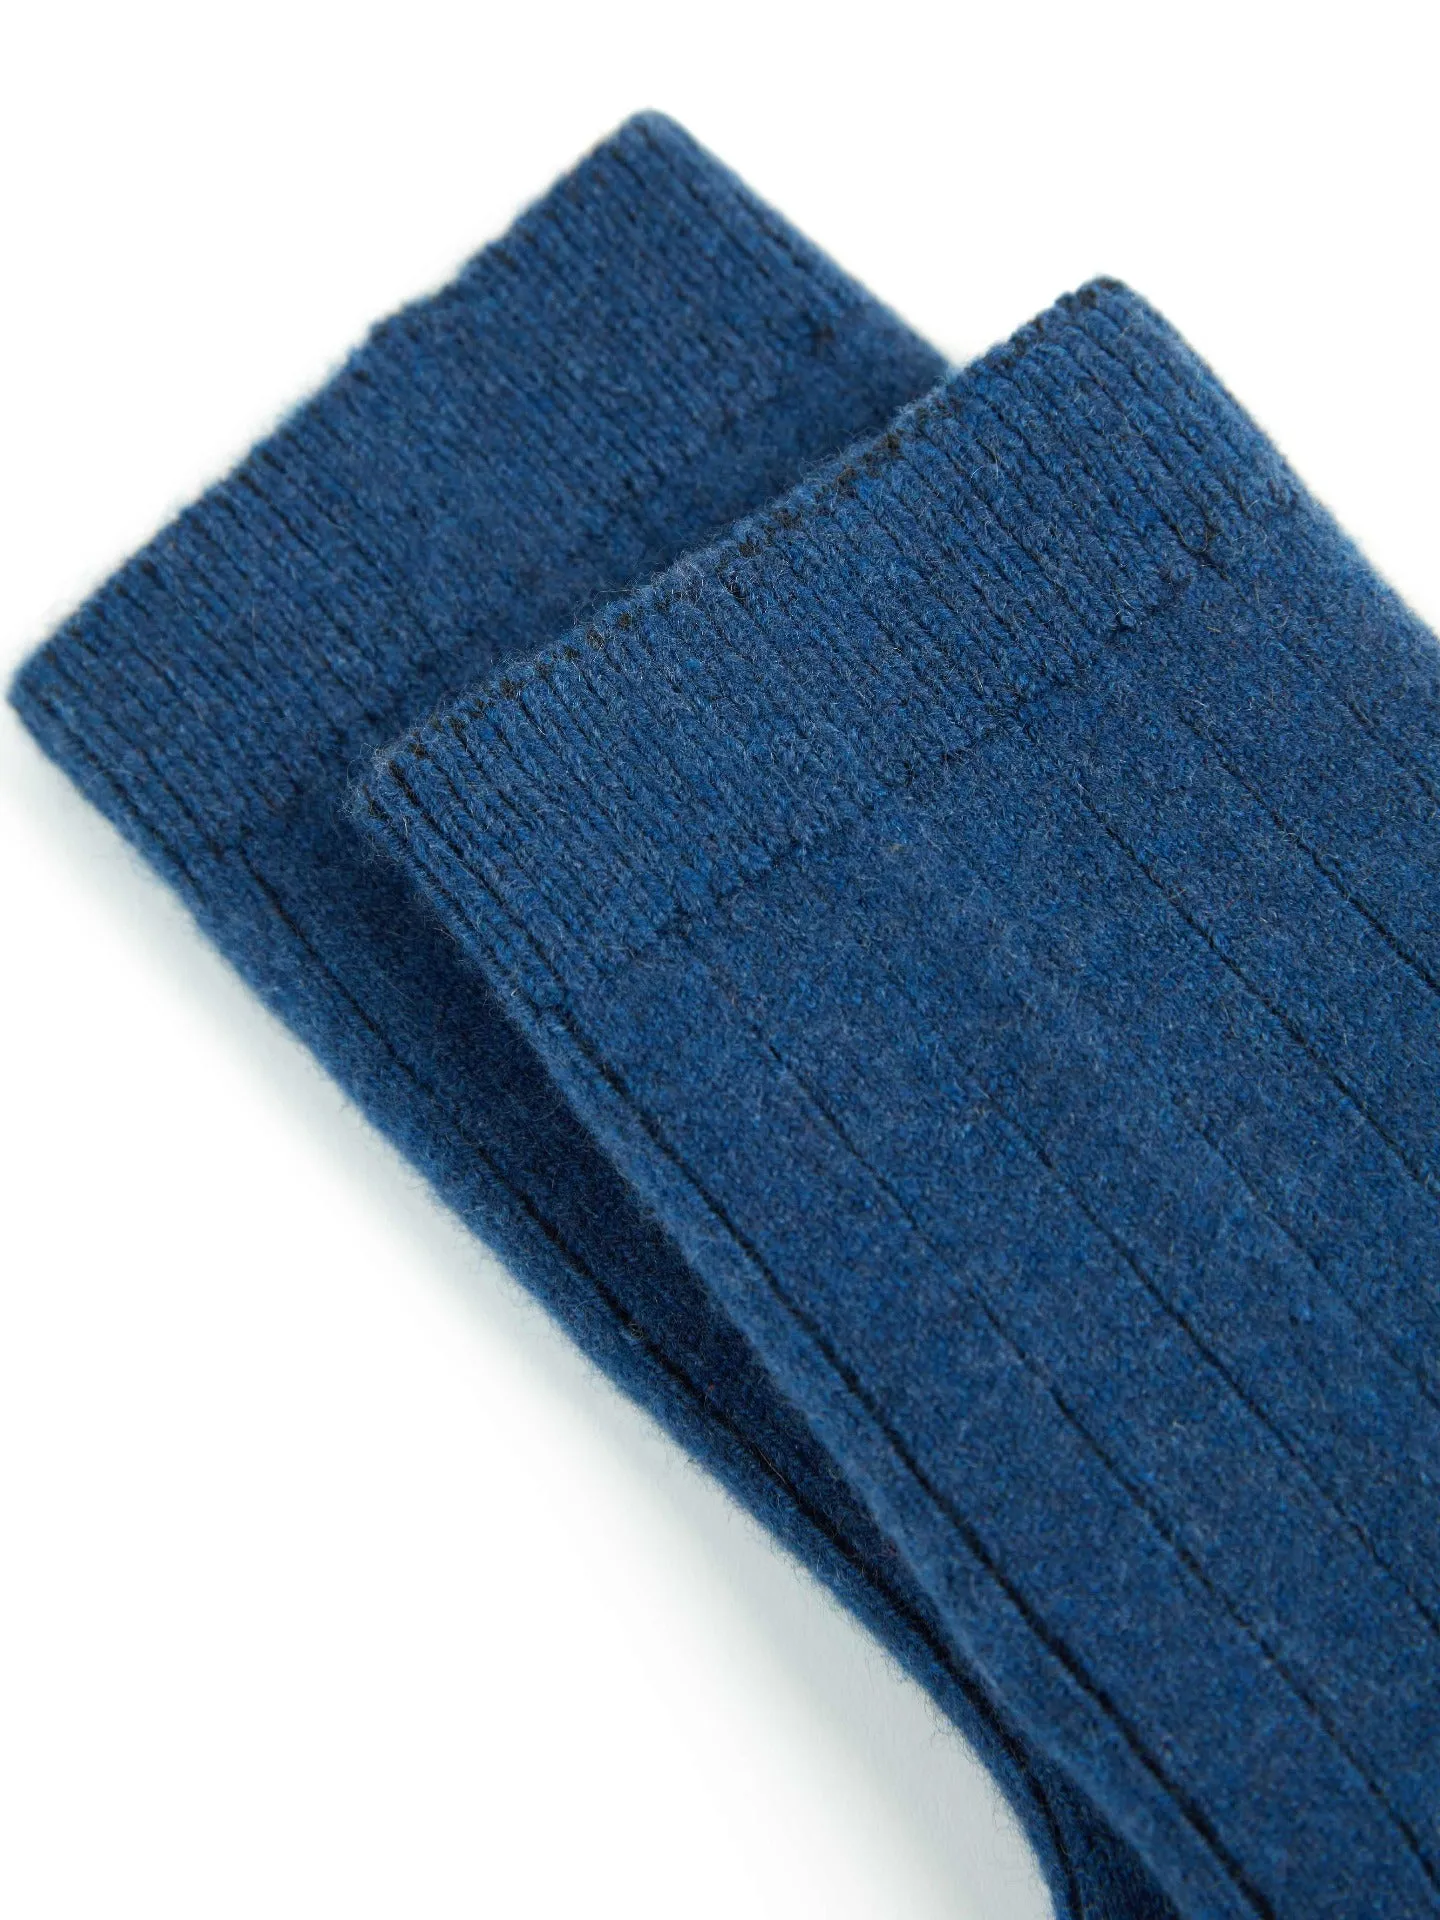 Unisex Cashmere Trim Knit Bed Socks Ensign Blue  - Gobi Cashmere